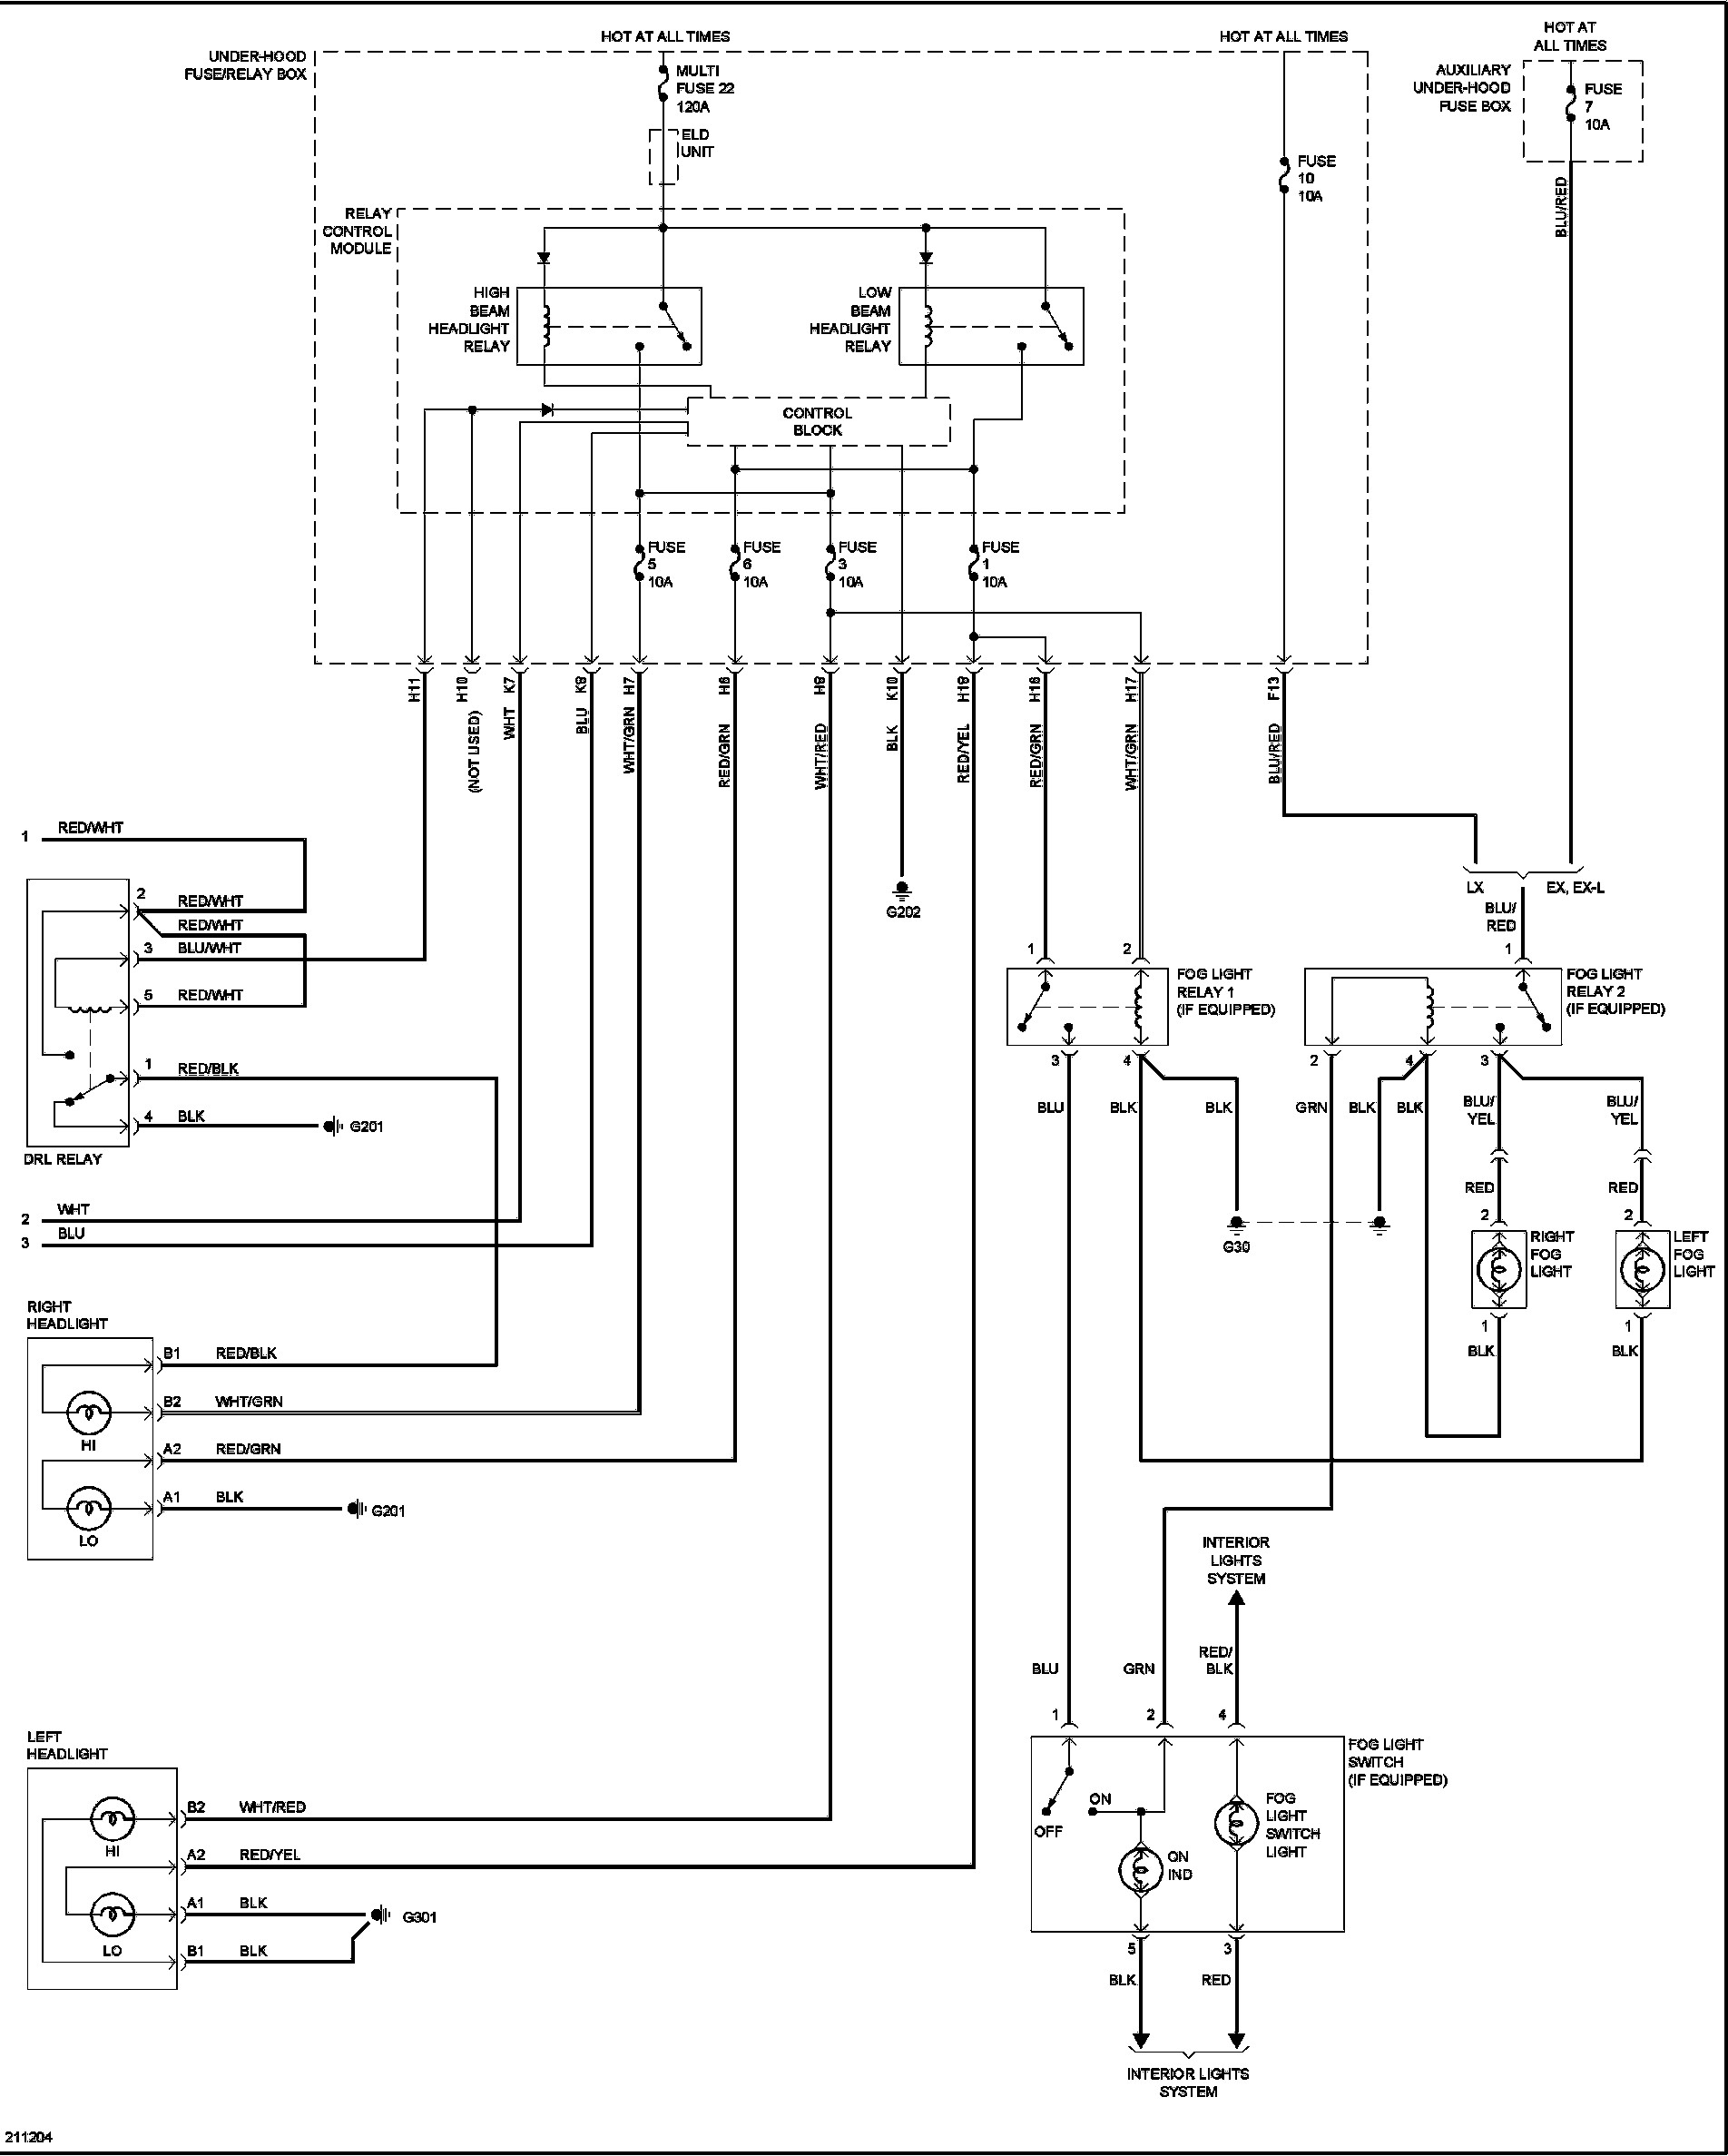 2003 Honda Odyssey Engine Wiring Schematic Diagram] 1997 Honda Odyssey System Wiring Diagram Full Of 2003 Honda Odyssey Engine Wiring Schematic